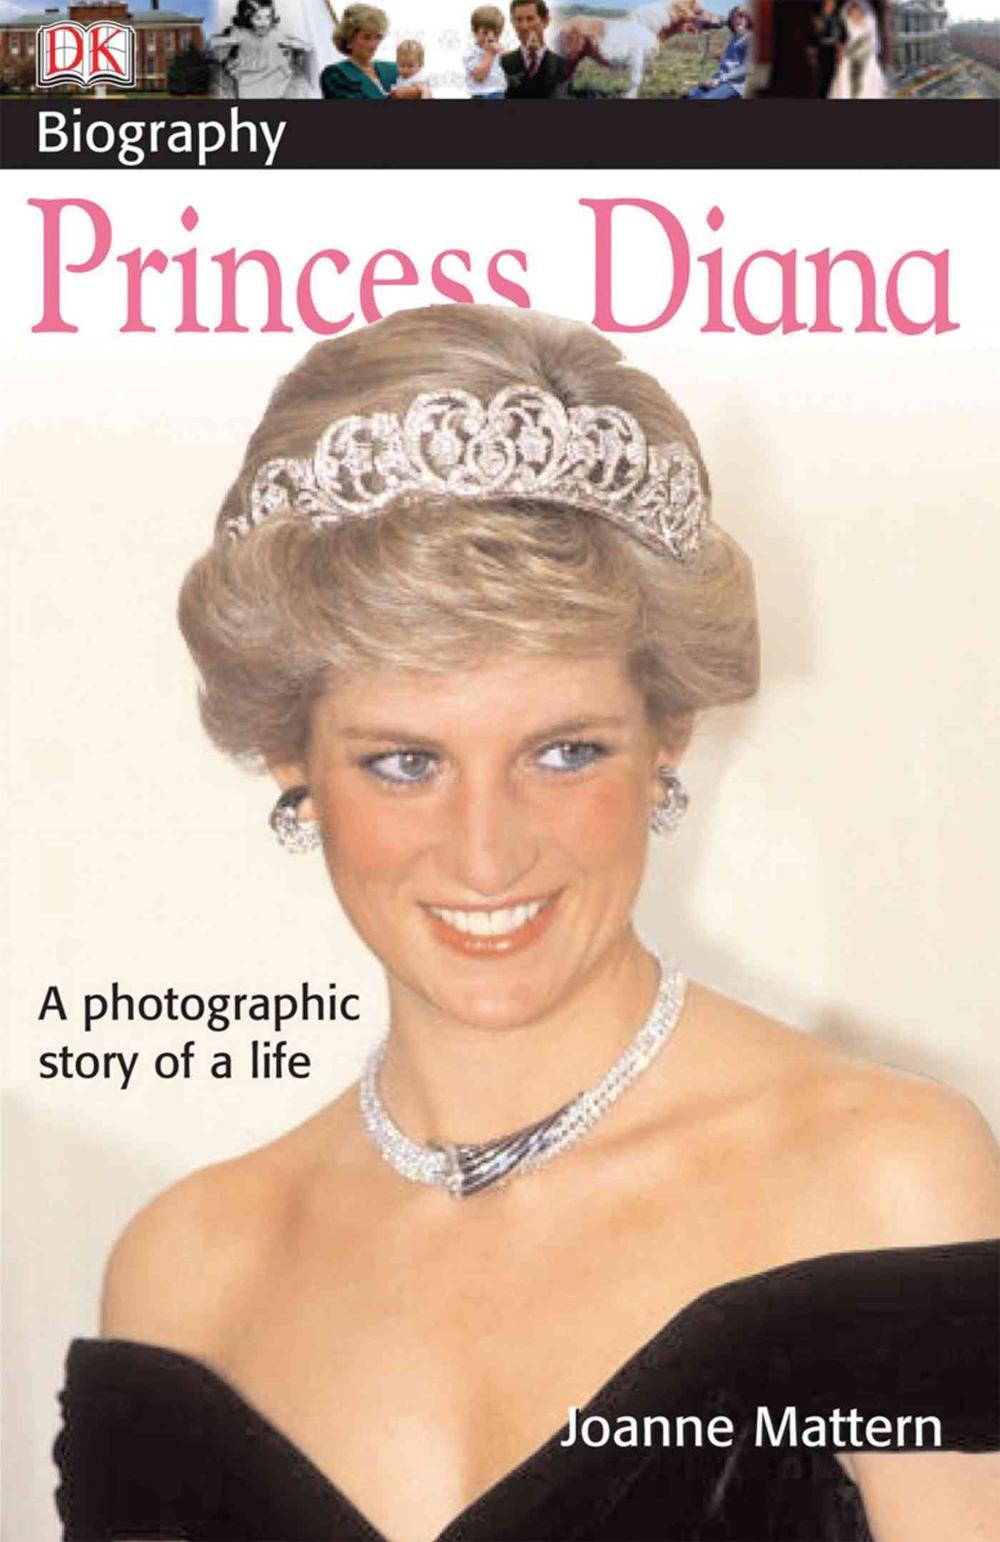 Princess Diana by Joanne Mattern, Paperback, 9780756616144 | Buy online ...